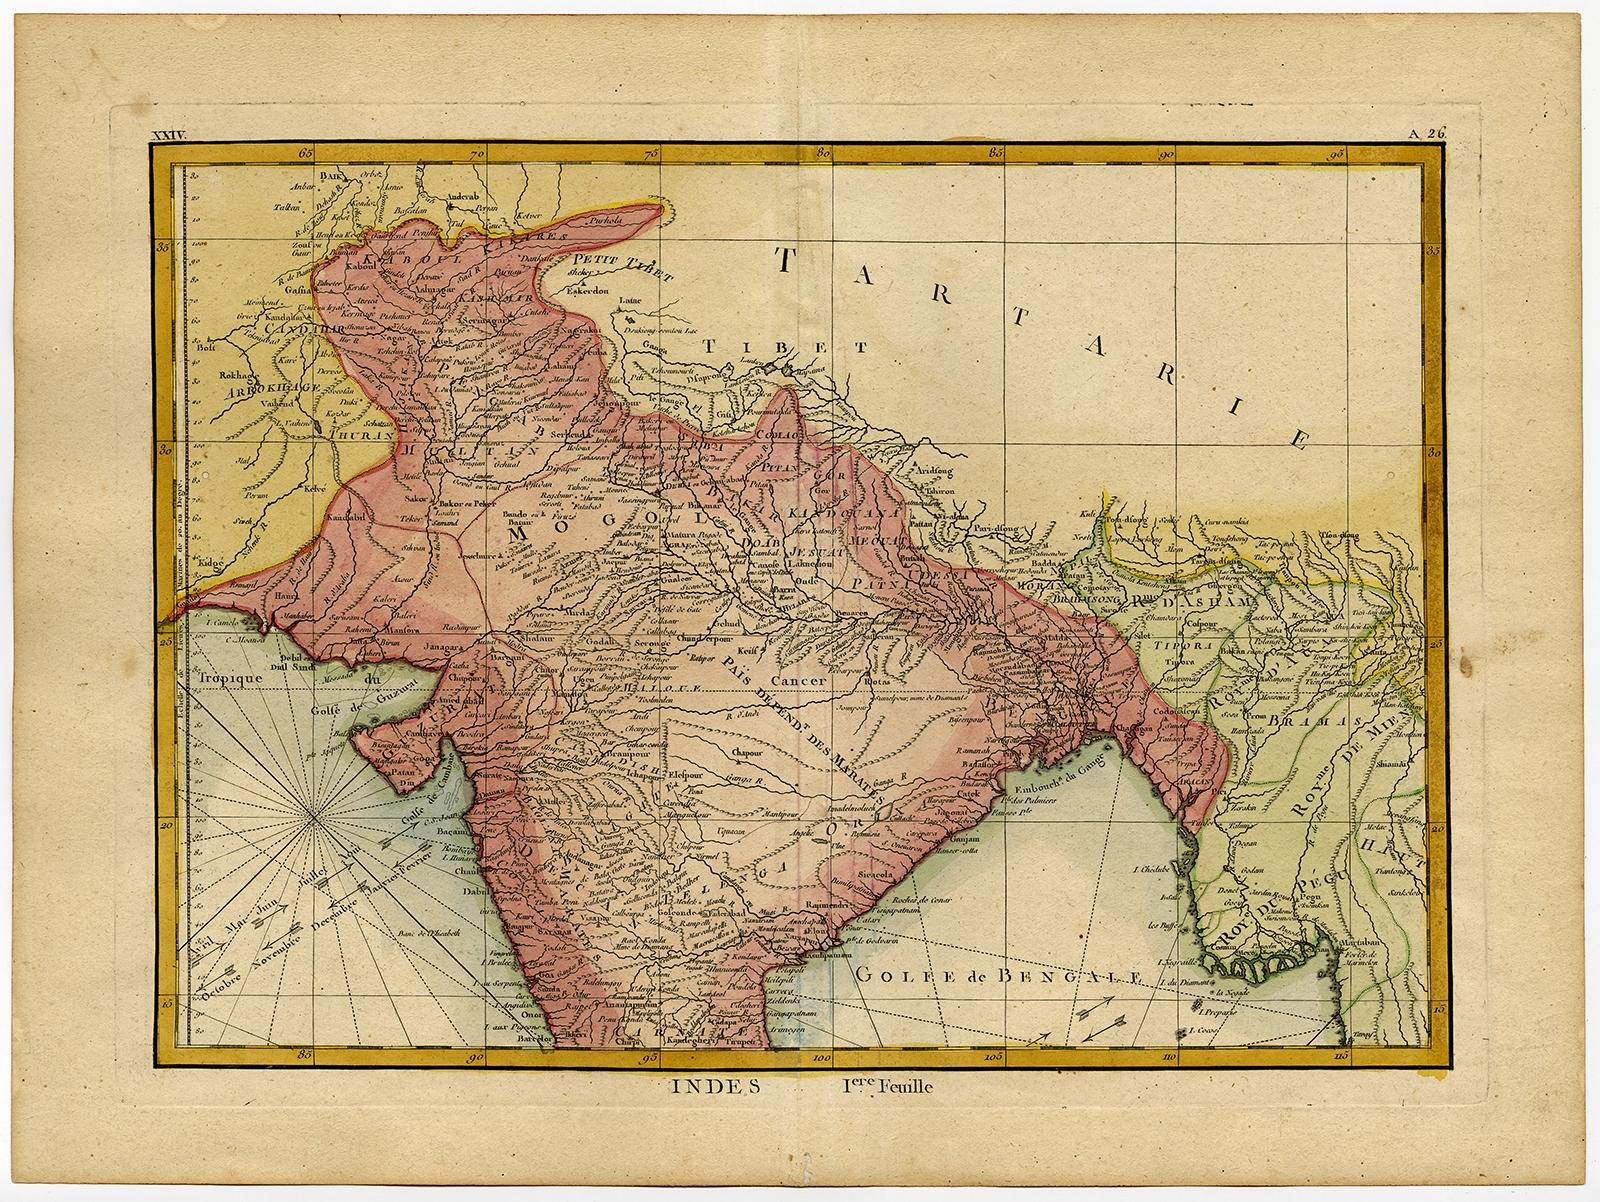 Antike Karte mit dem Titel 'Indes'. Eine Karte von Nordindien mit den umliegenden Regionen. Aus Lattres 